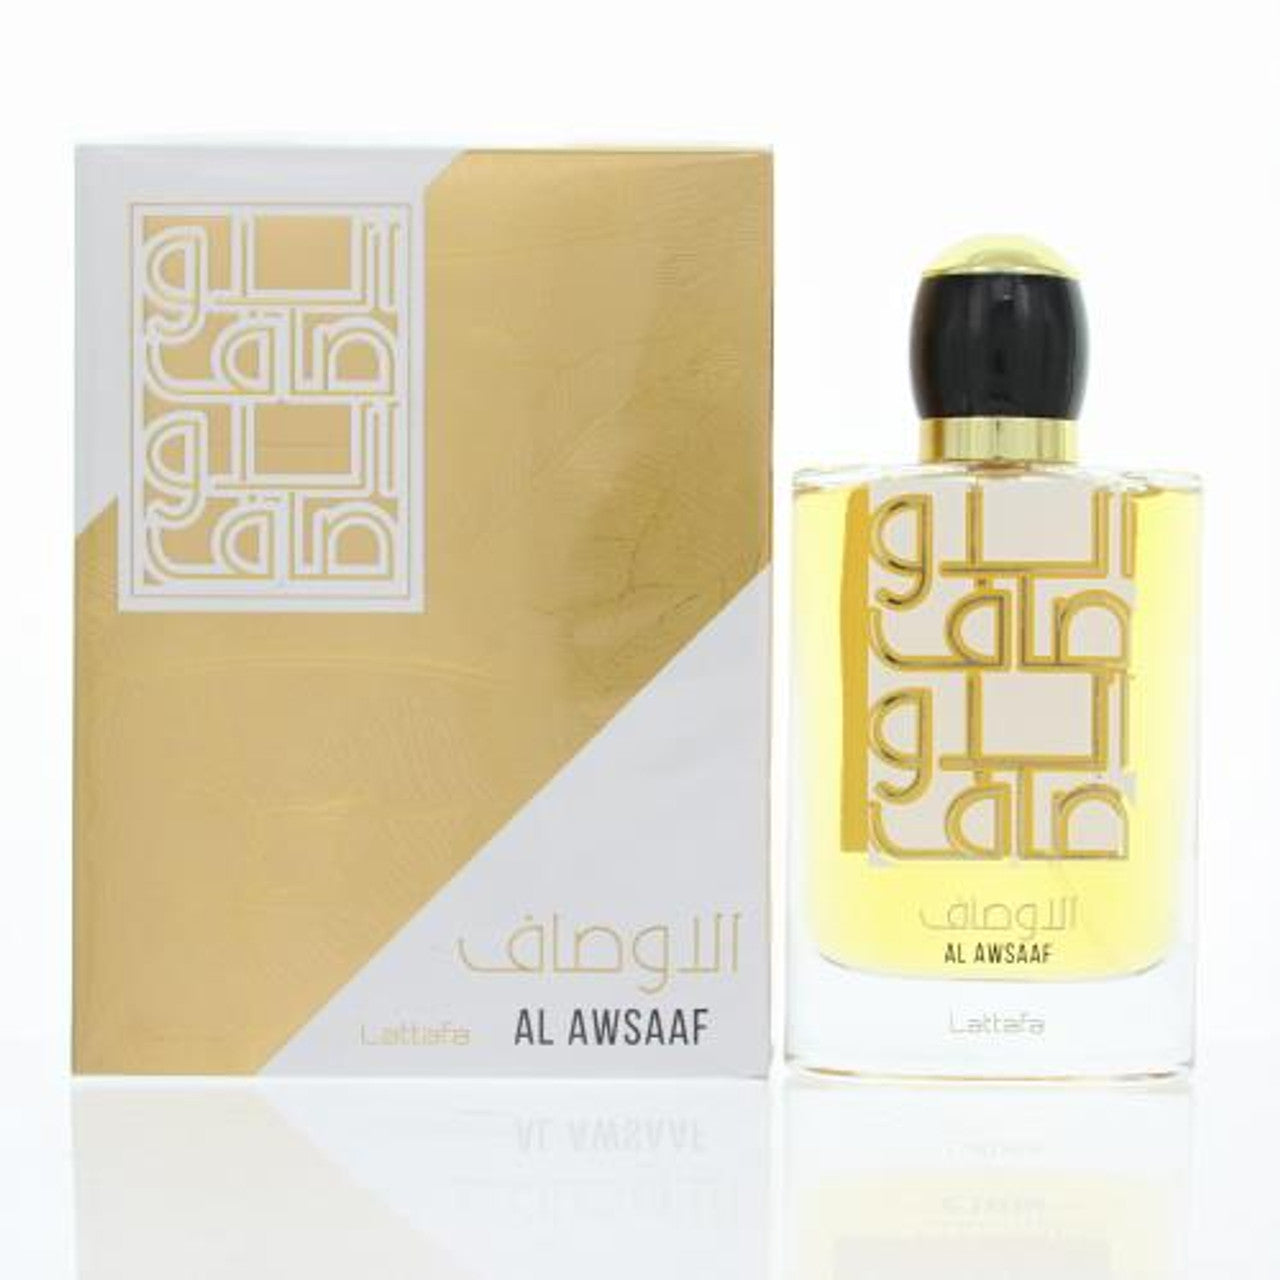 Al Awsaaf by Lattafa Perfumes 3.4 oz EDP Spray U